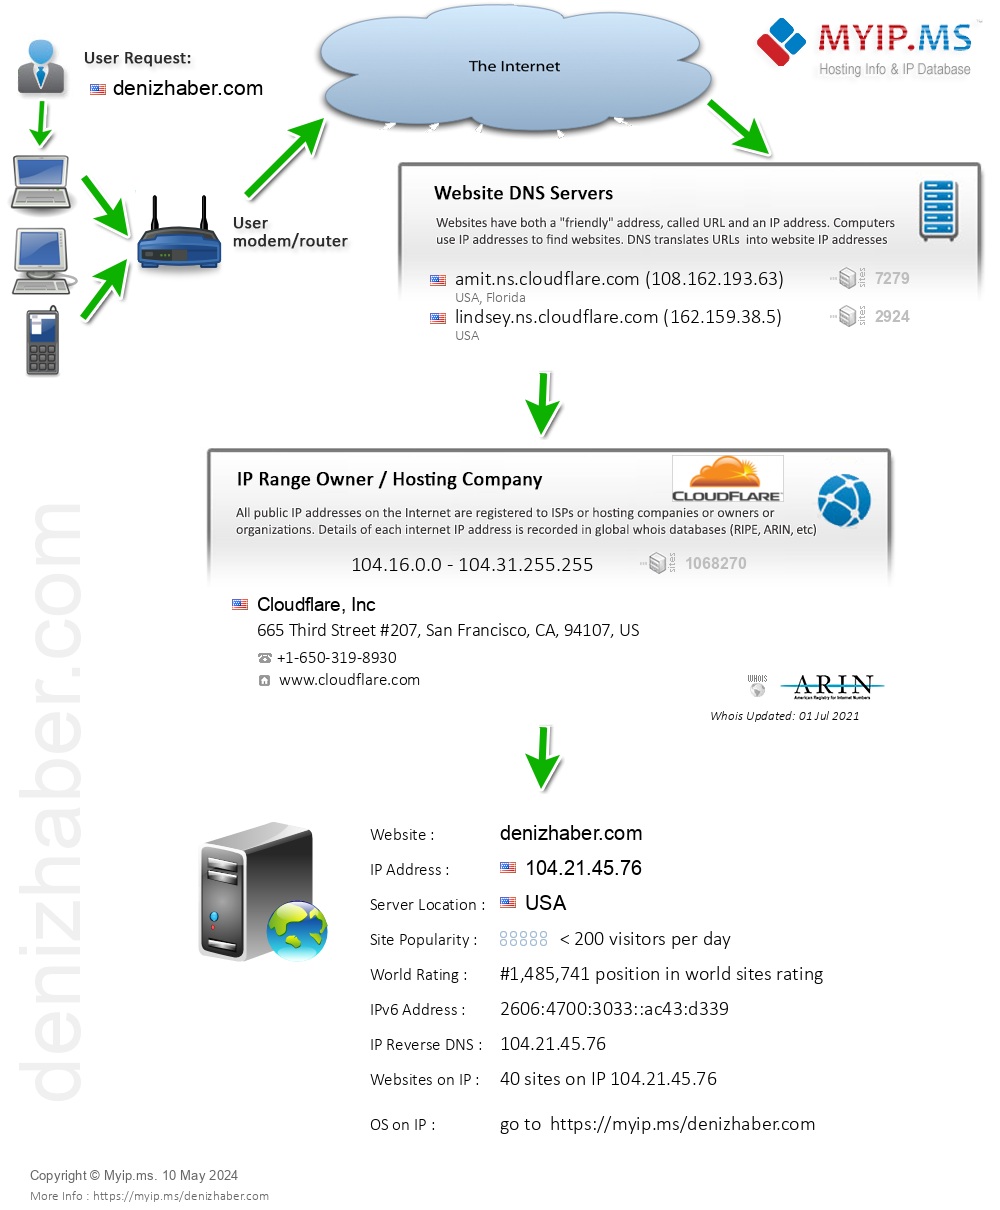 Denizhaber.com - Website Hosting Visual IP Diagram